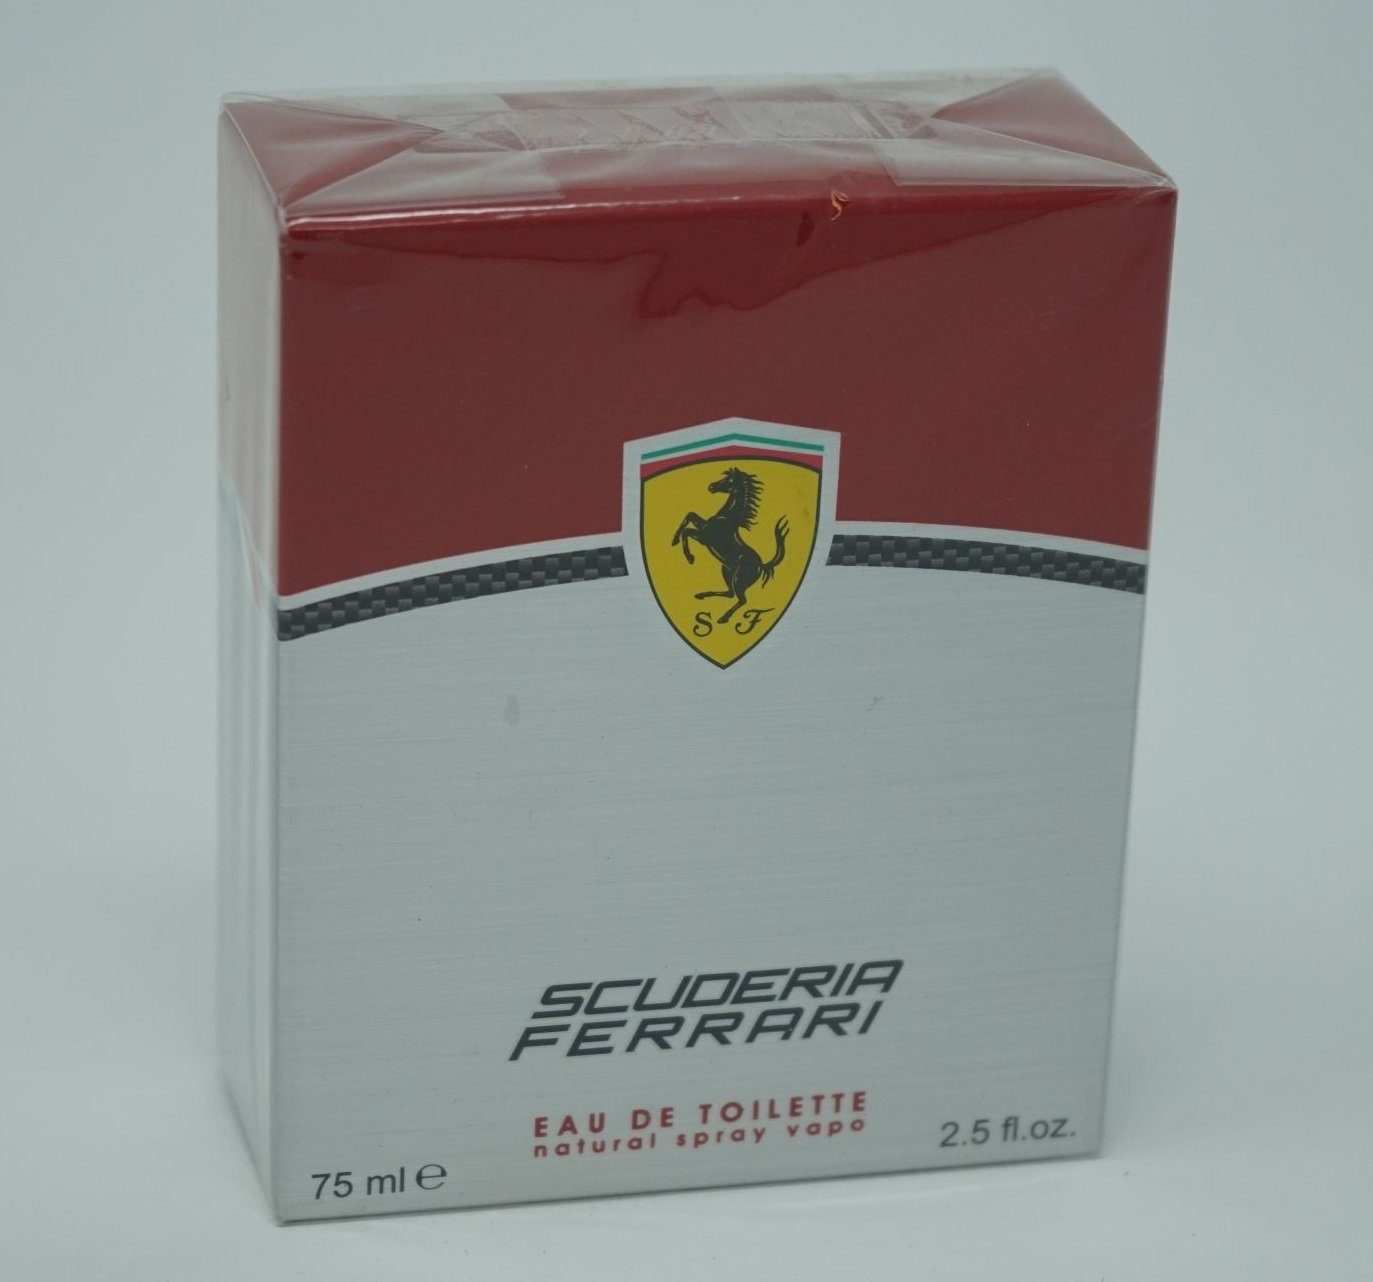 Ferrari Eau de Toilette Scuderia Ferrari Eau de Toilette Spray 75ml